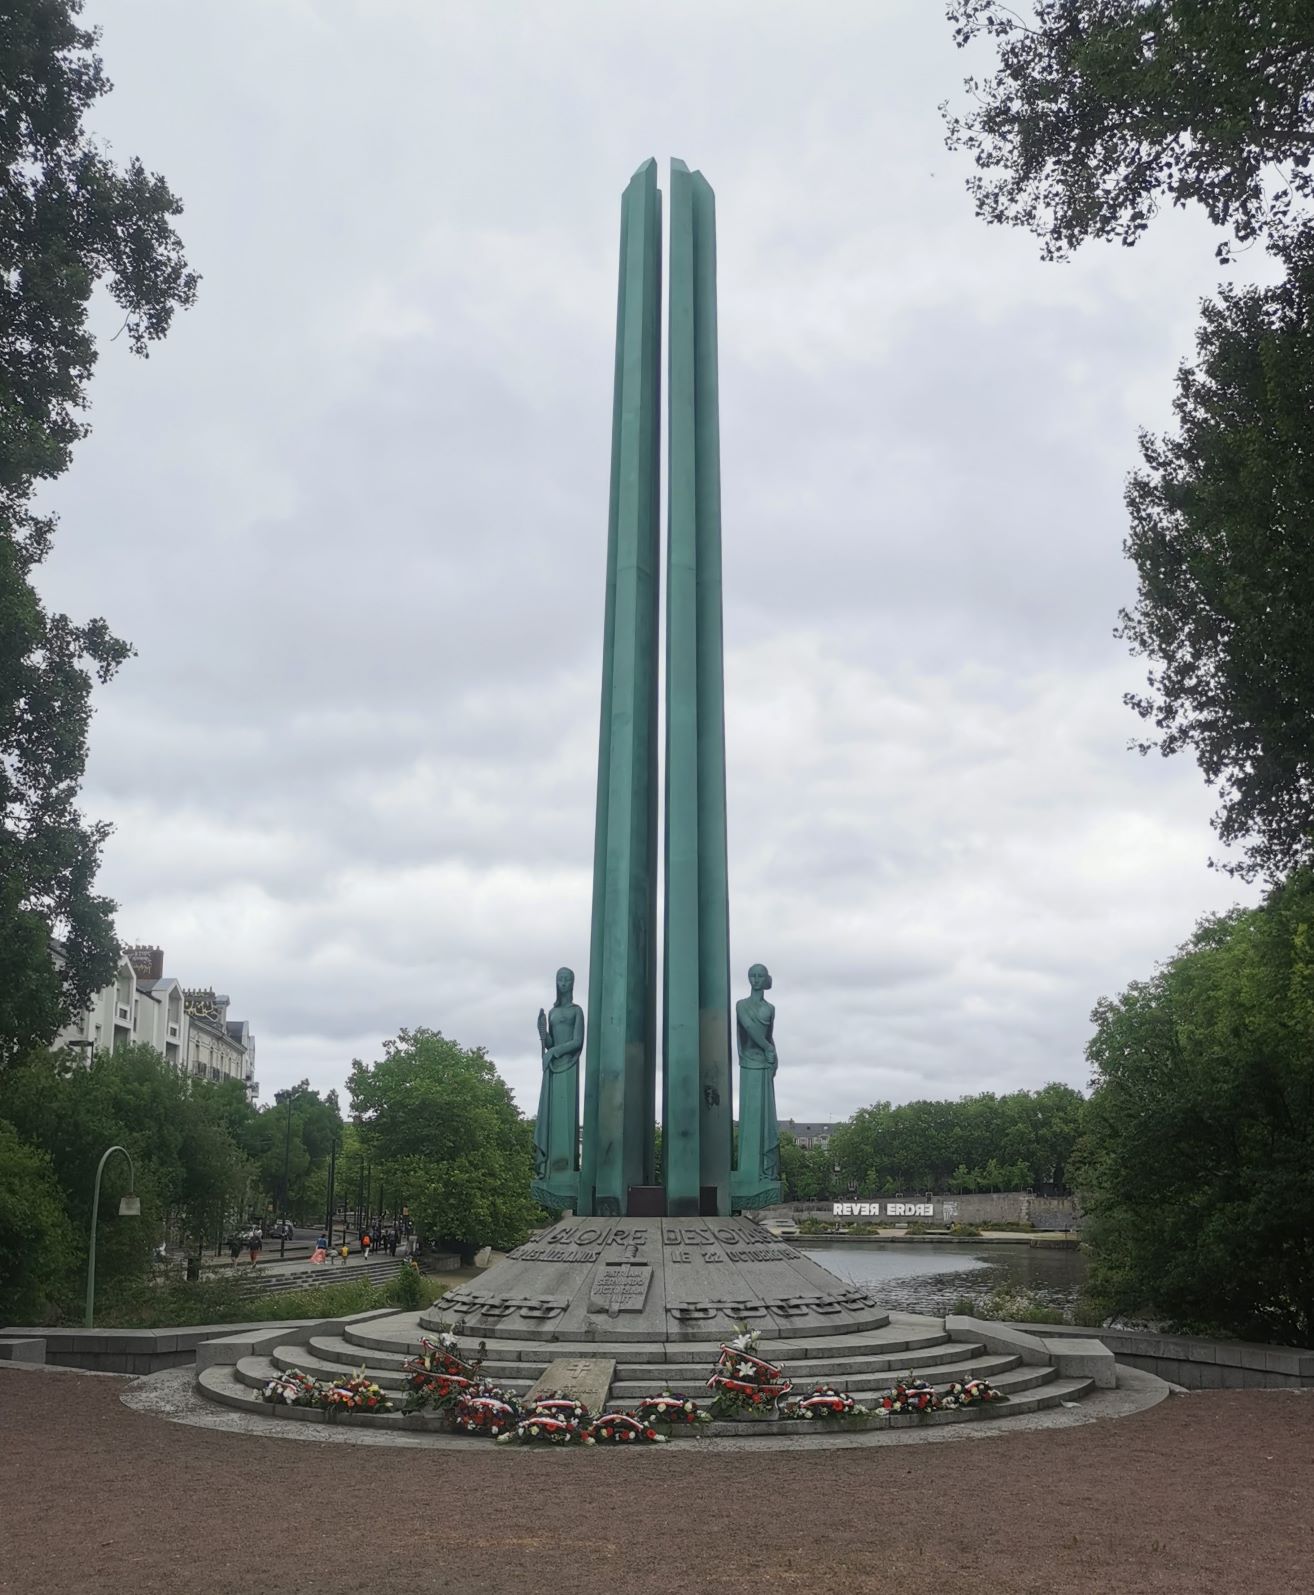 Ez egy második világháborús emlékmű a francia ellenállás (maquis) tiszteletére.